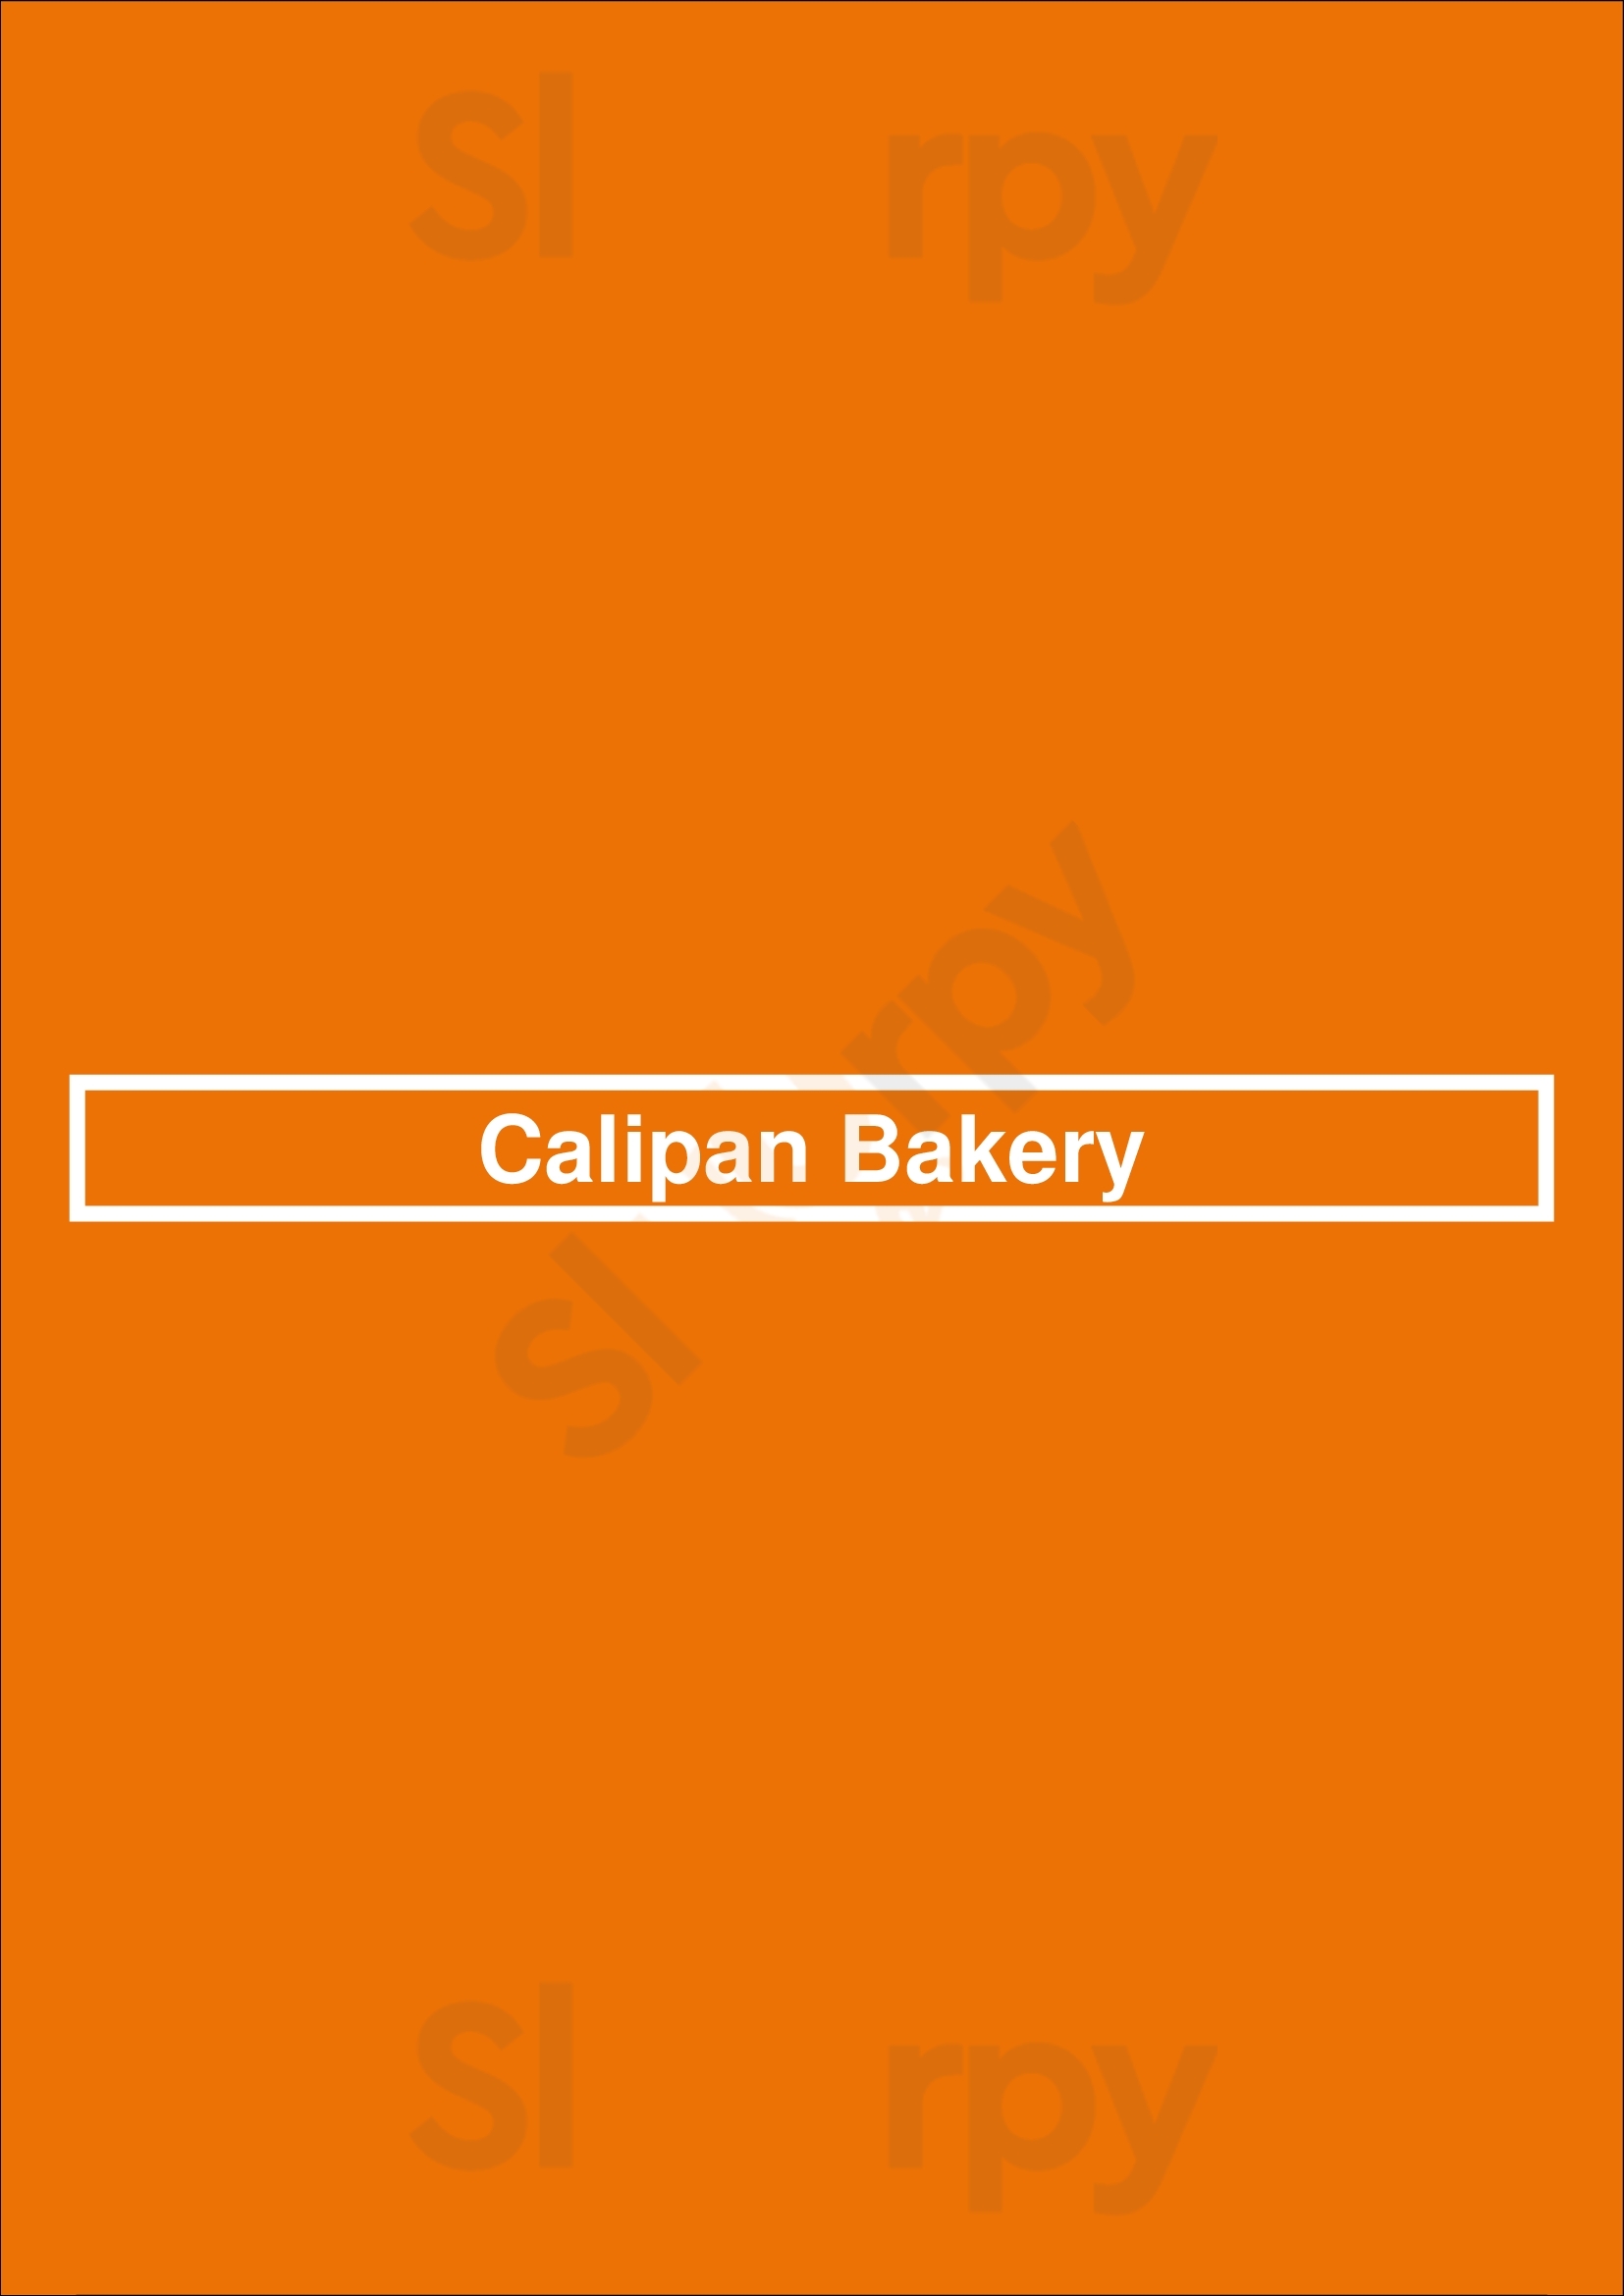 Calipan Bakery Hamilton Menu - 1